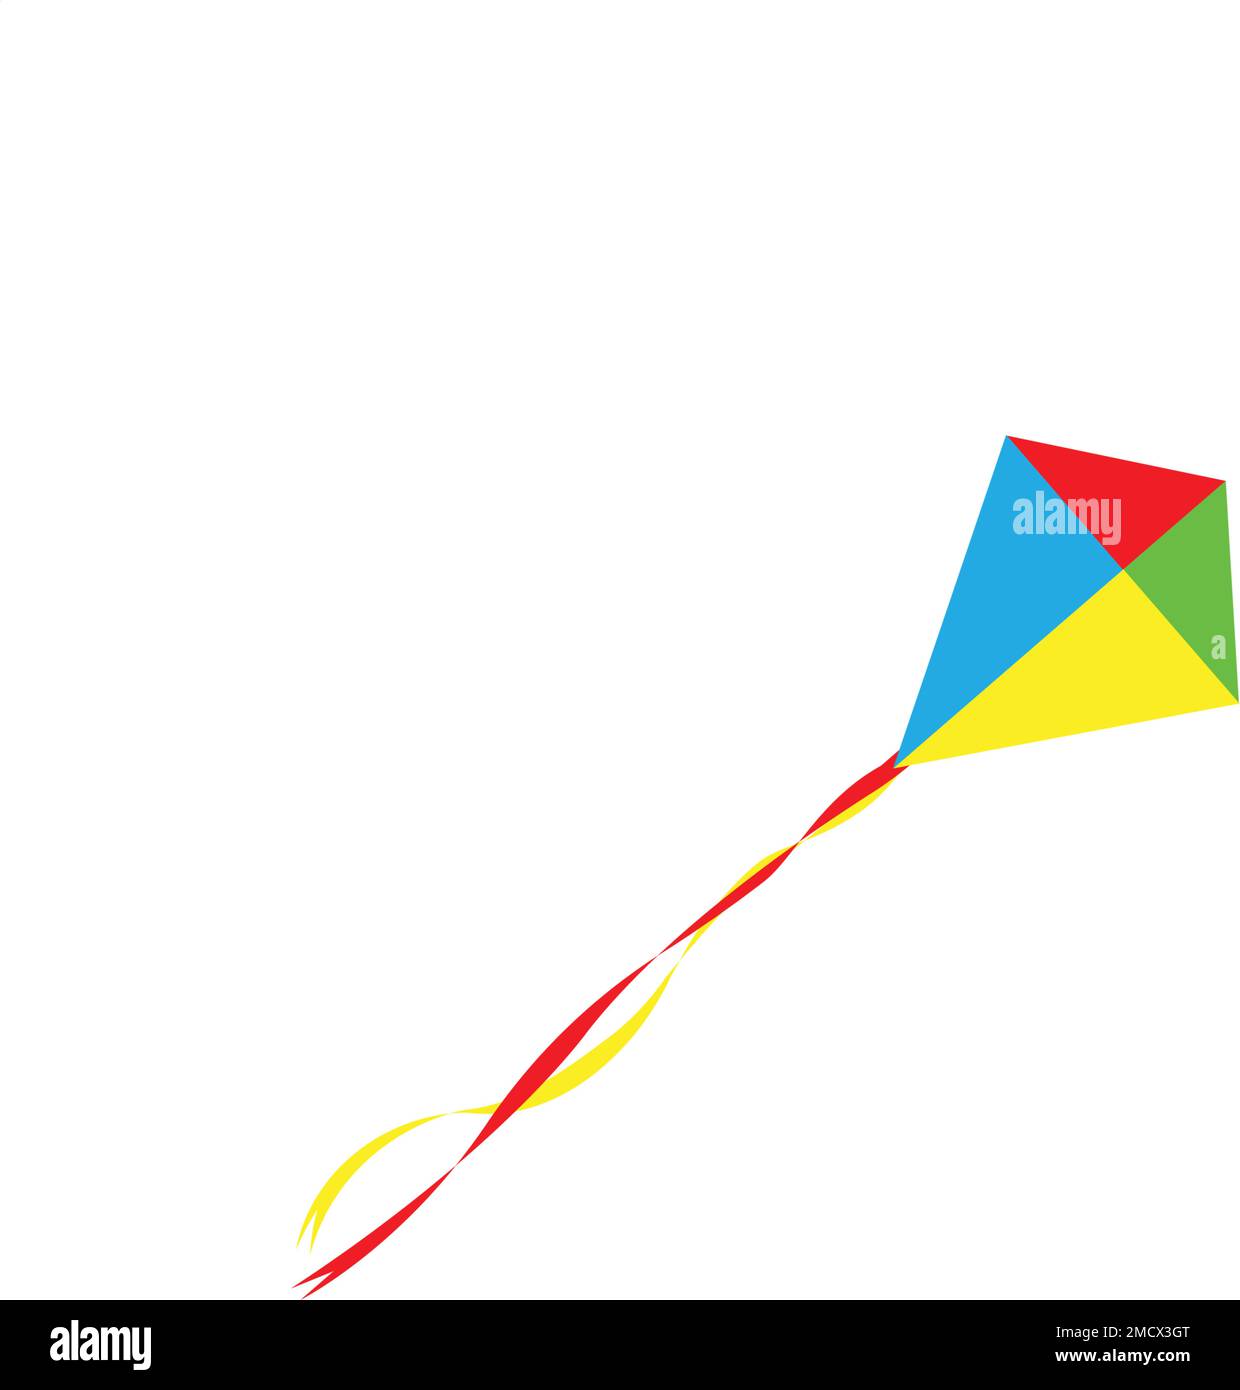 motif d'illustration du logo cerf-volant Illustration de Vecteur